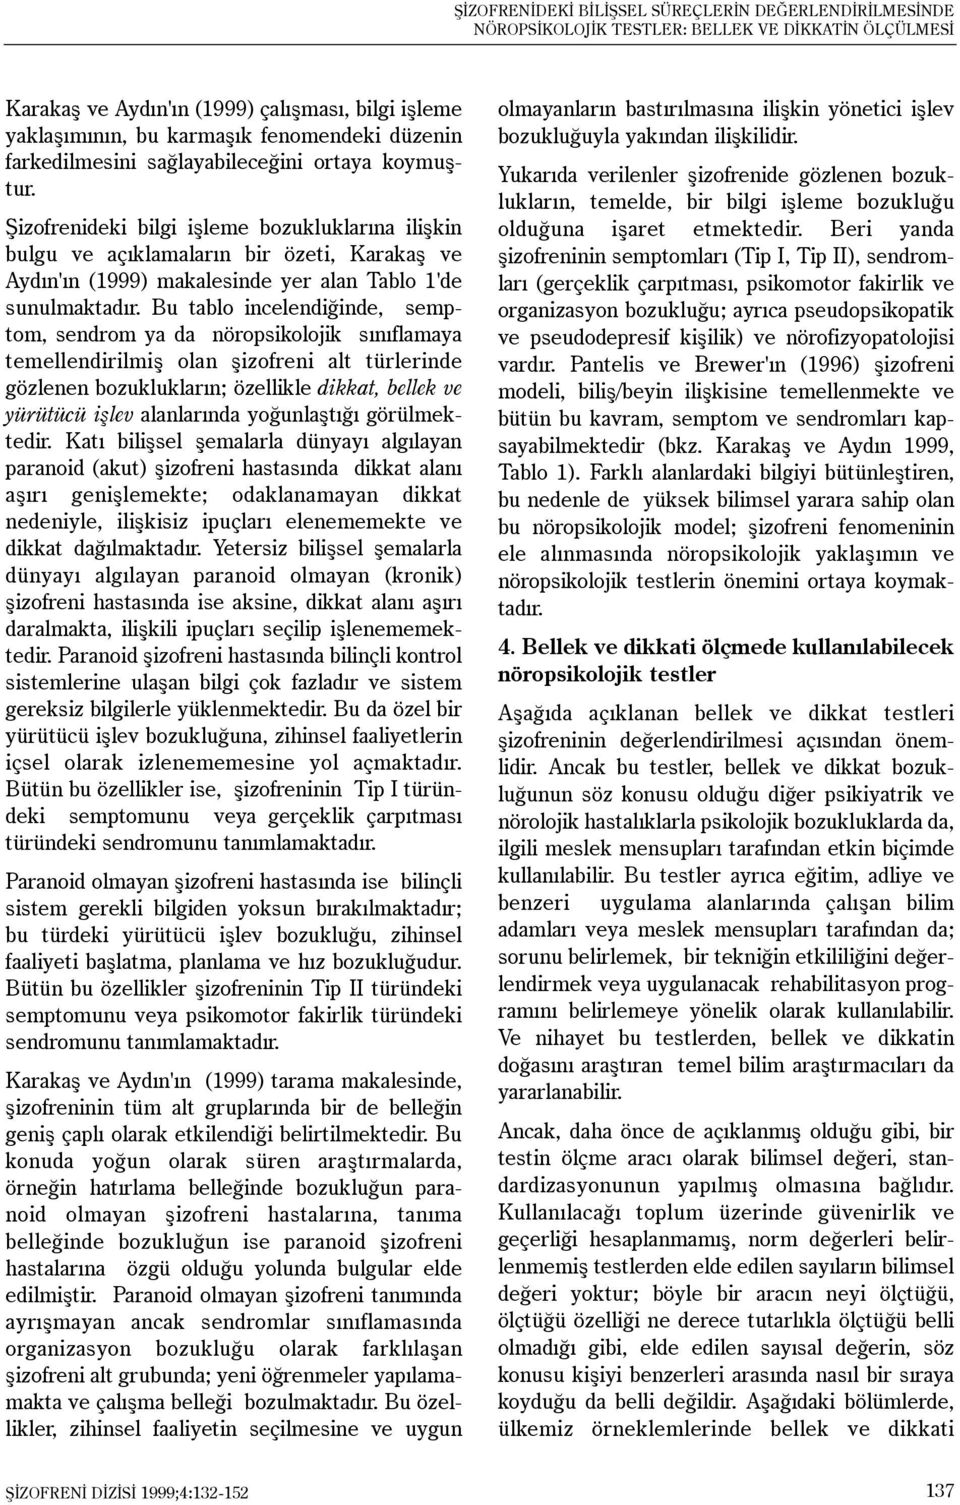 Þizofrenideki bilgi iþleme bozukluklarýna iliþkin bulgu ve açýklamalarýn bir özeti, Karakaþ ve Aydýn'ýn (1999) makalesinde yer alan Tablo 1'de sunulmaktadýr.